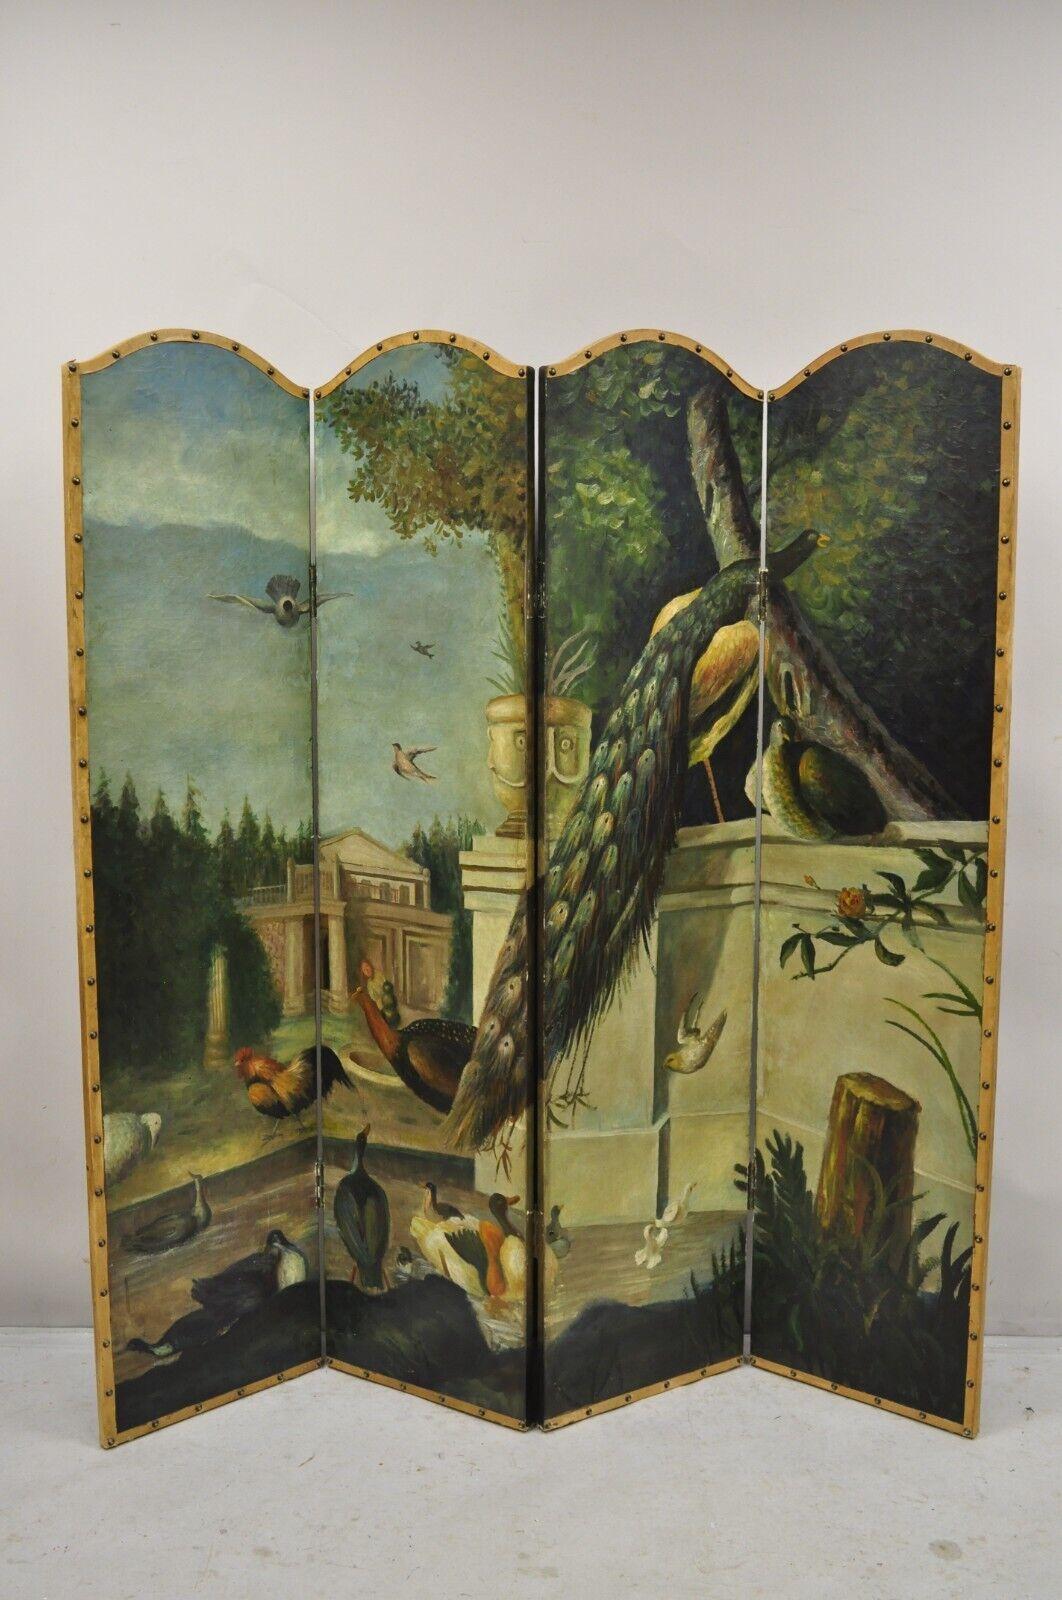 Antike venezianische Hand gemalt Öl auf Leinwand Folding 4 Abschnitt Peacock Vogel Bildschirm Raumteiler. Um 1900.
Abmessungen: 
Gesamt: 67,25